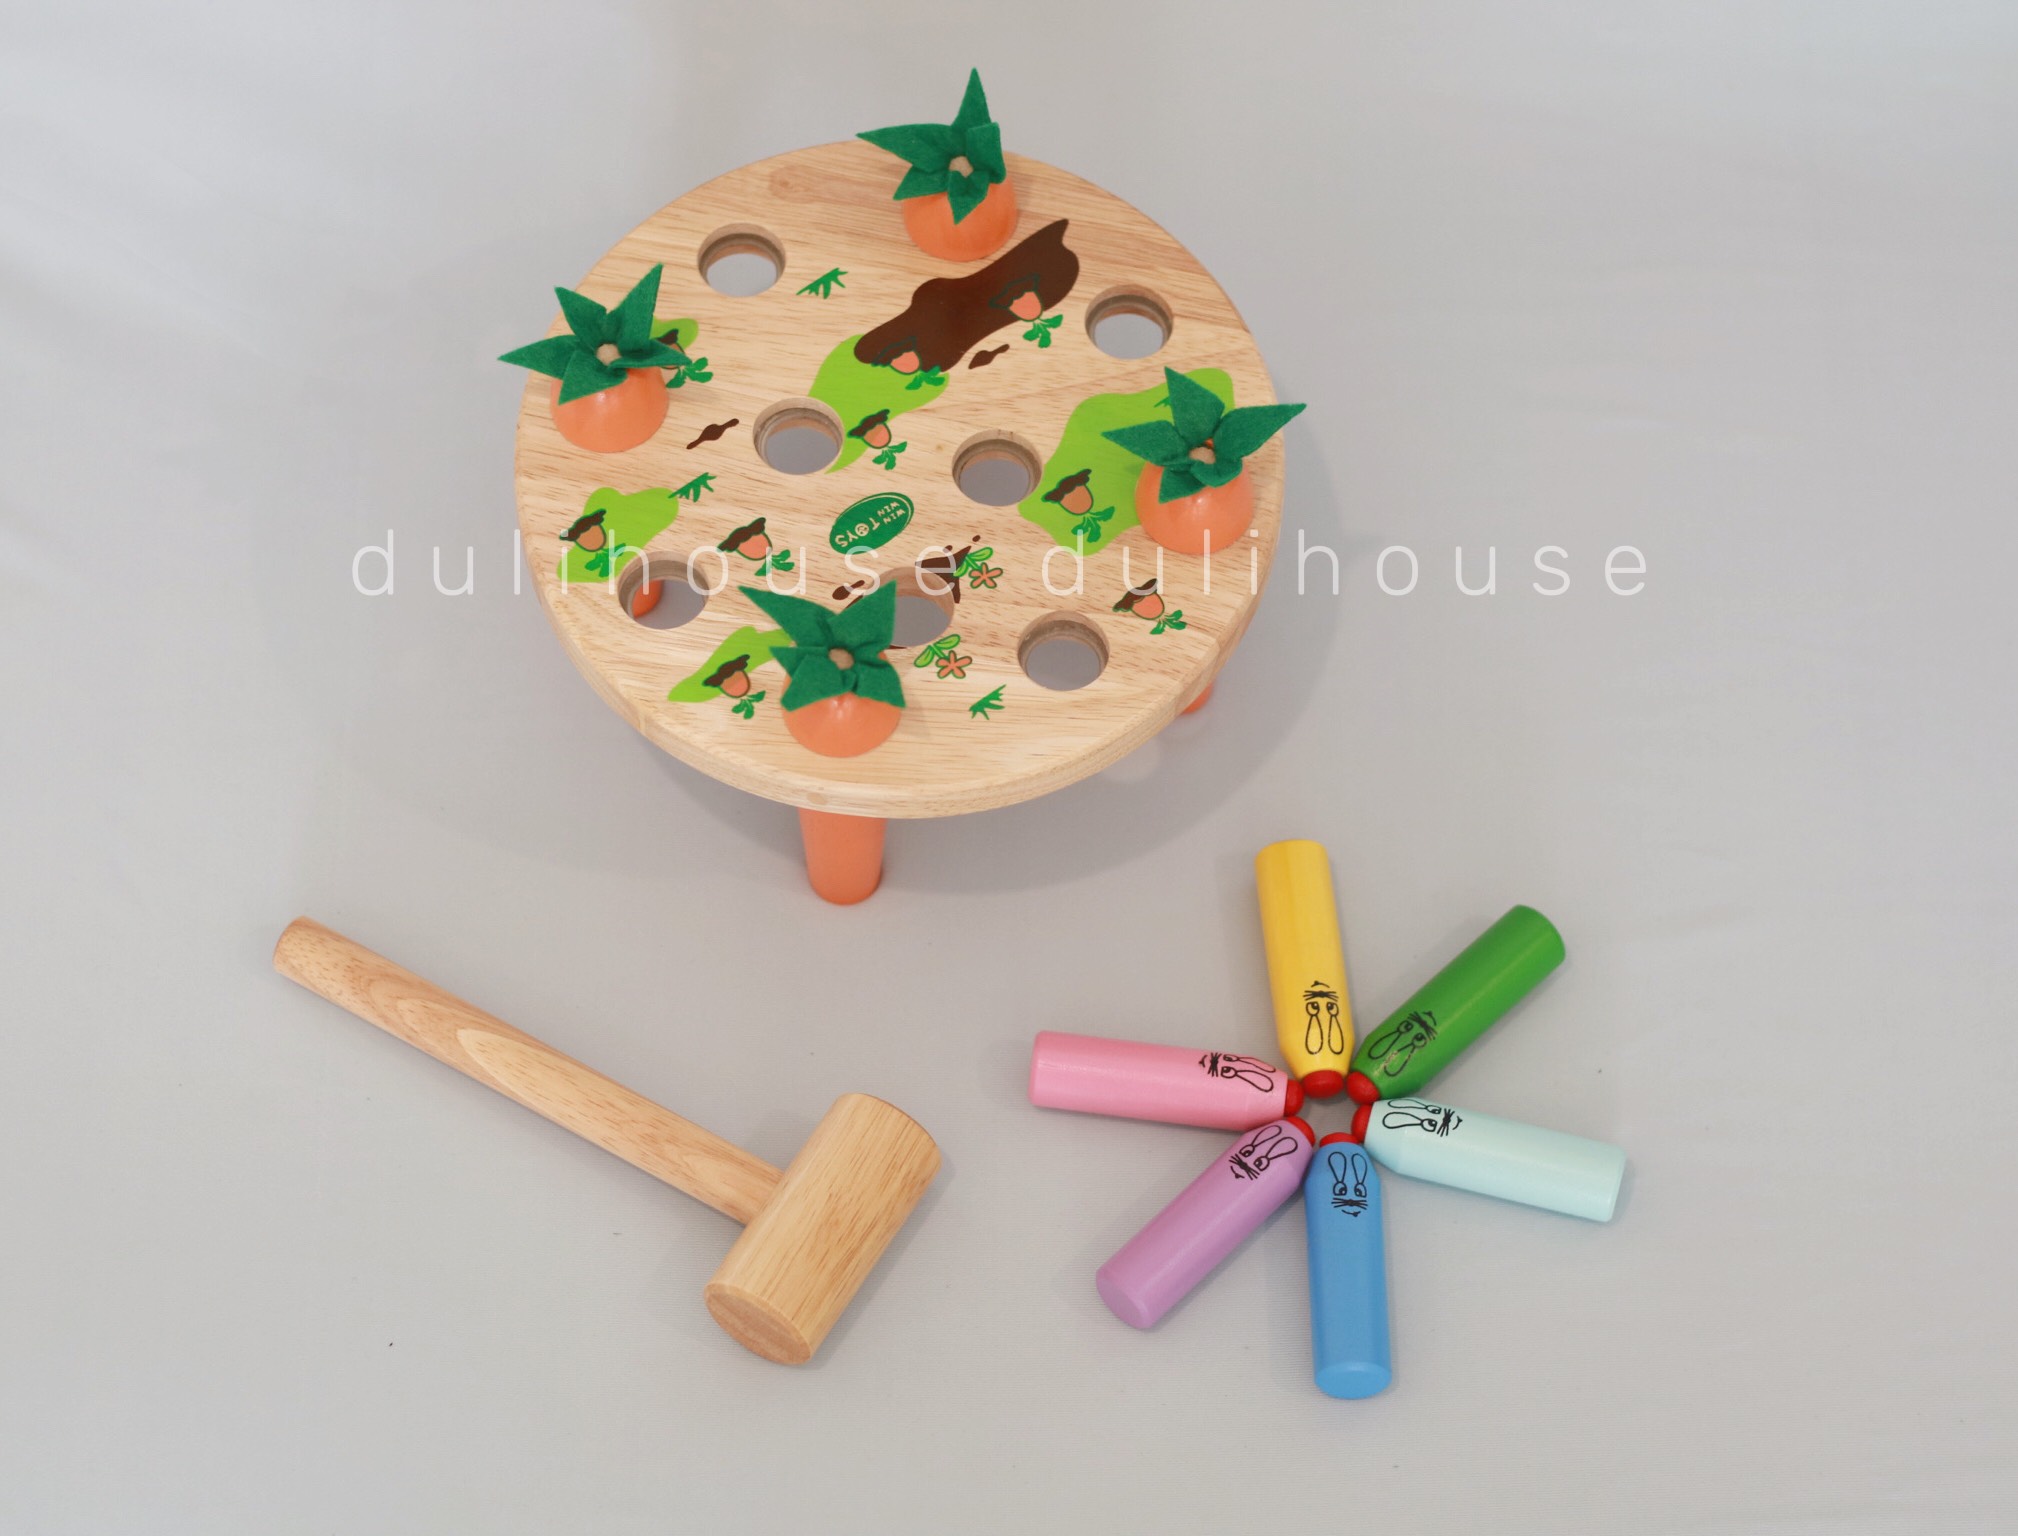 Đồ chơi gỗ búa đập thỏ, giúp bé phân biệt màu sắc, rèn luyện tính khéo léo, nhanh nhẹn, chính xác - Sản xuất tại Việt Nam